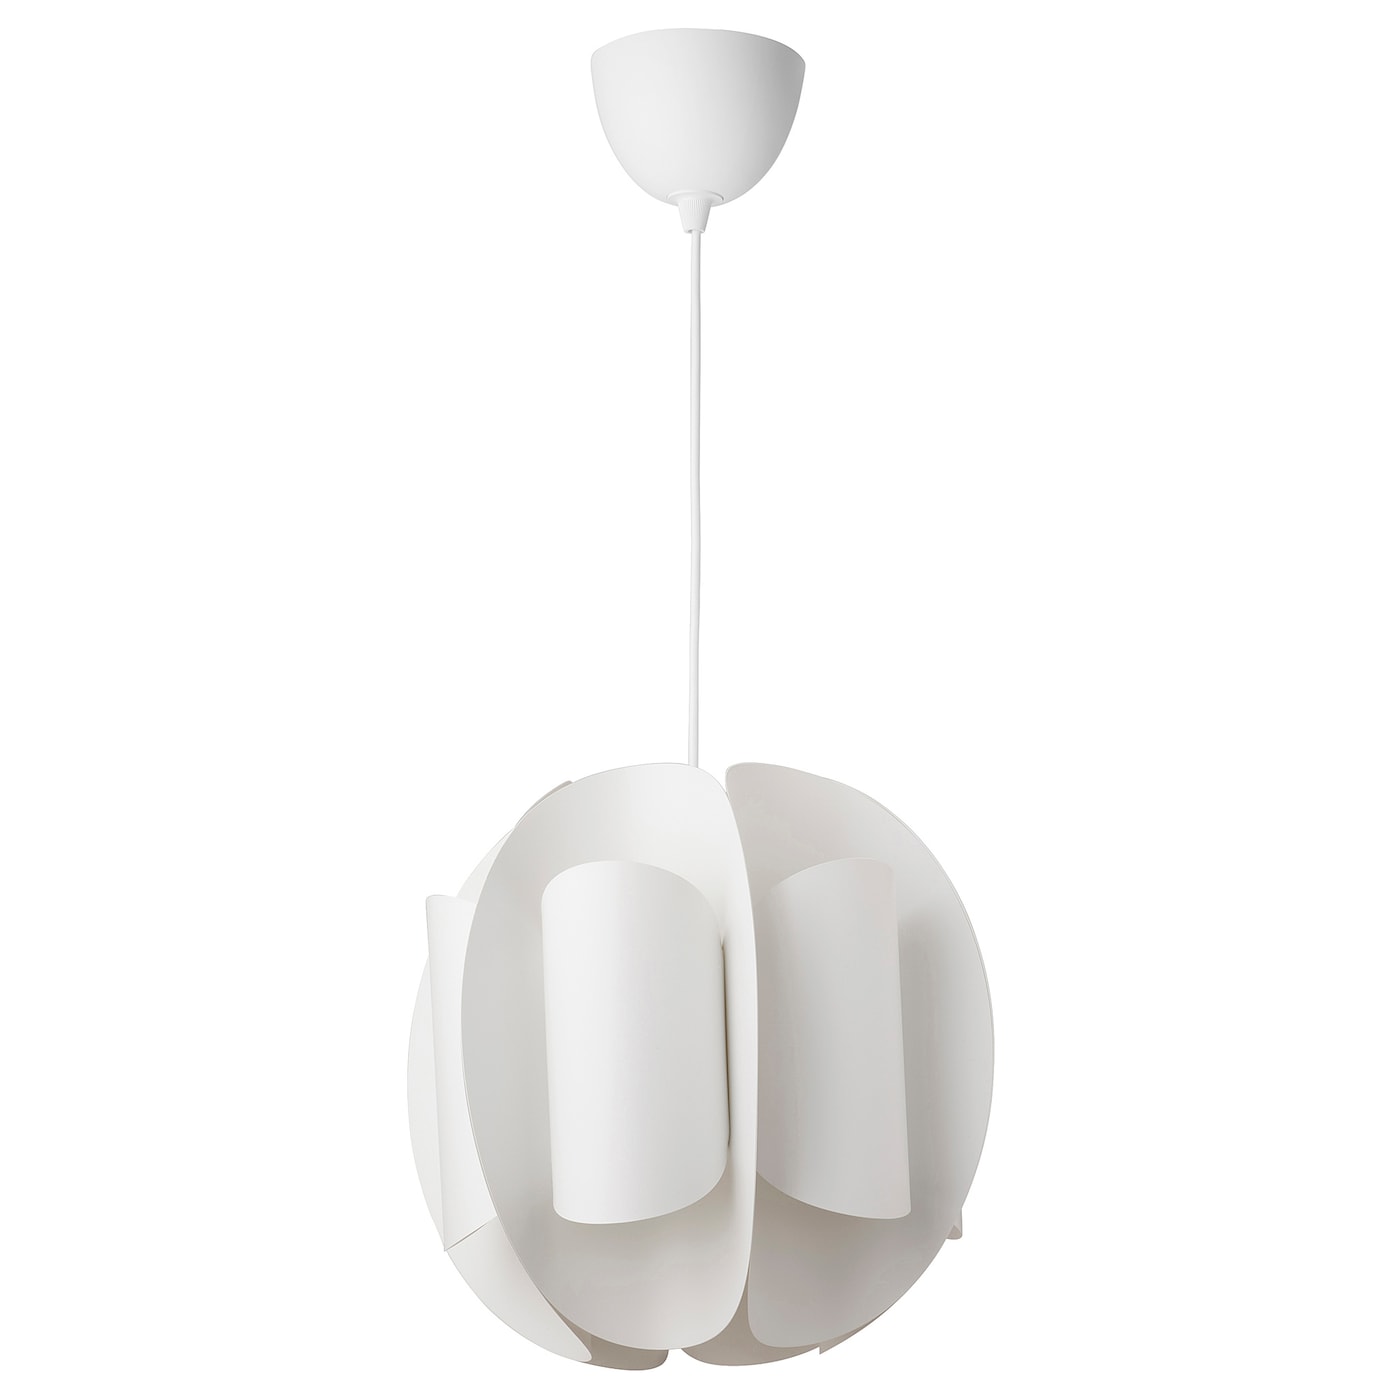 Подвесной светильник - TRUBBNATE IKEA / ТРЮББНАТЕ   ИКЕА,  38 см, белый